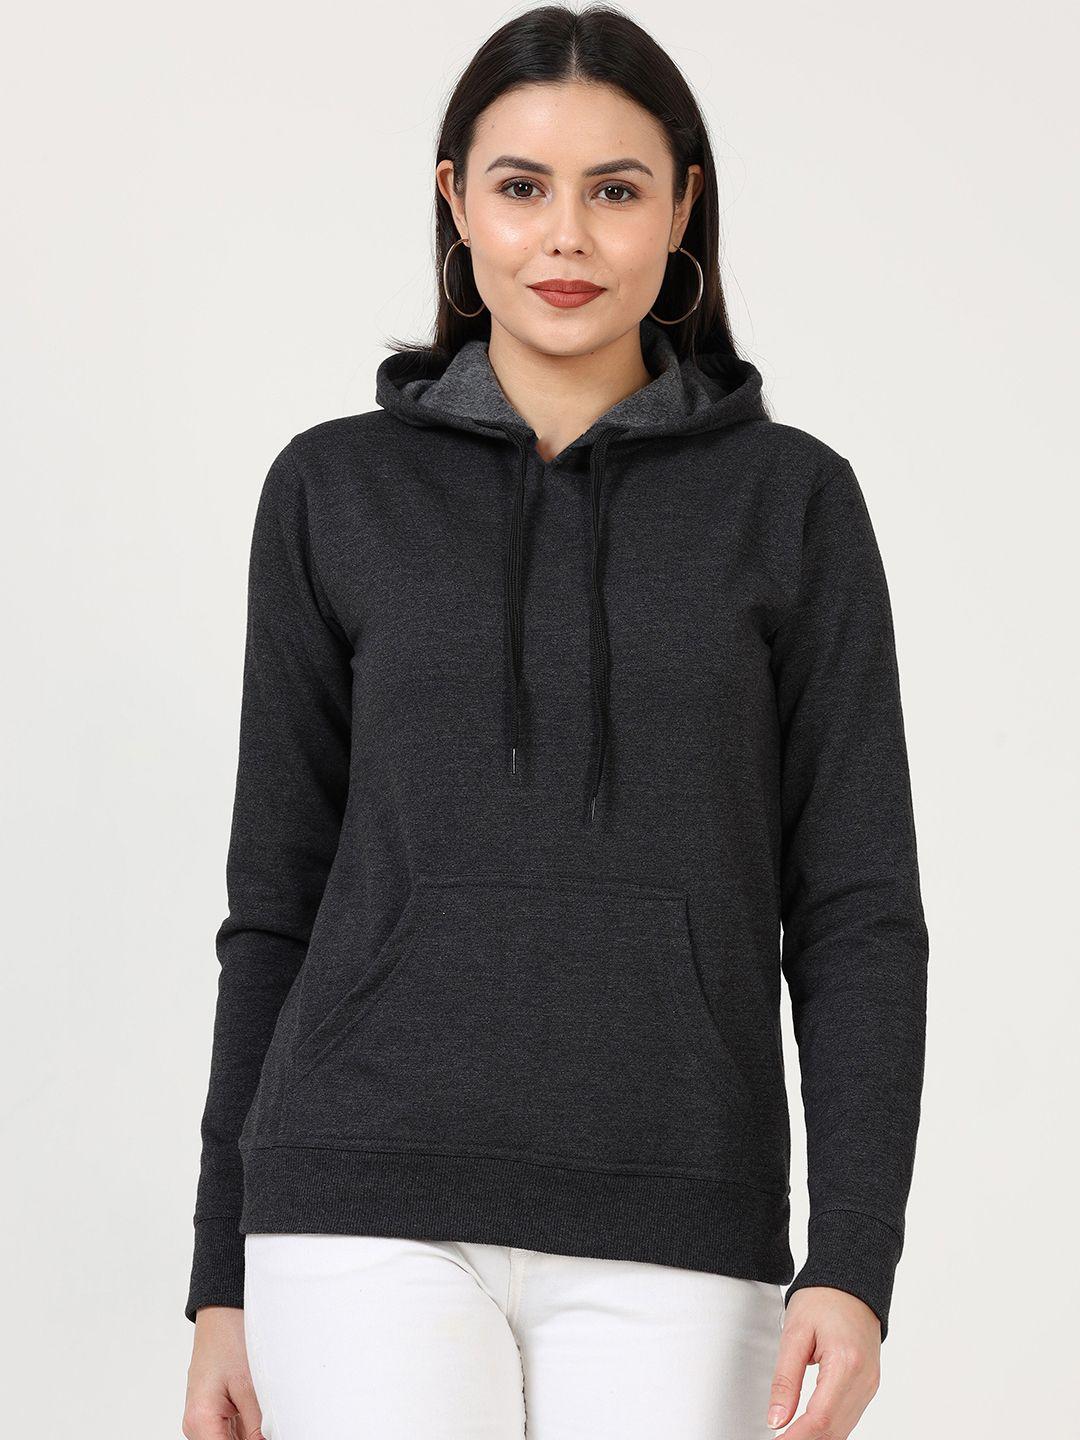 fleximaa women charcoal hooded sweatshirt